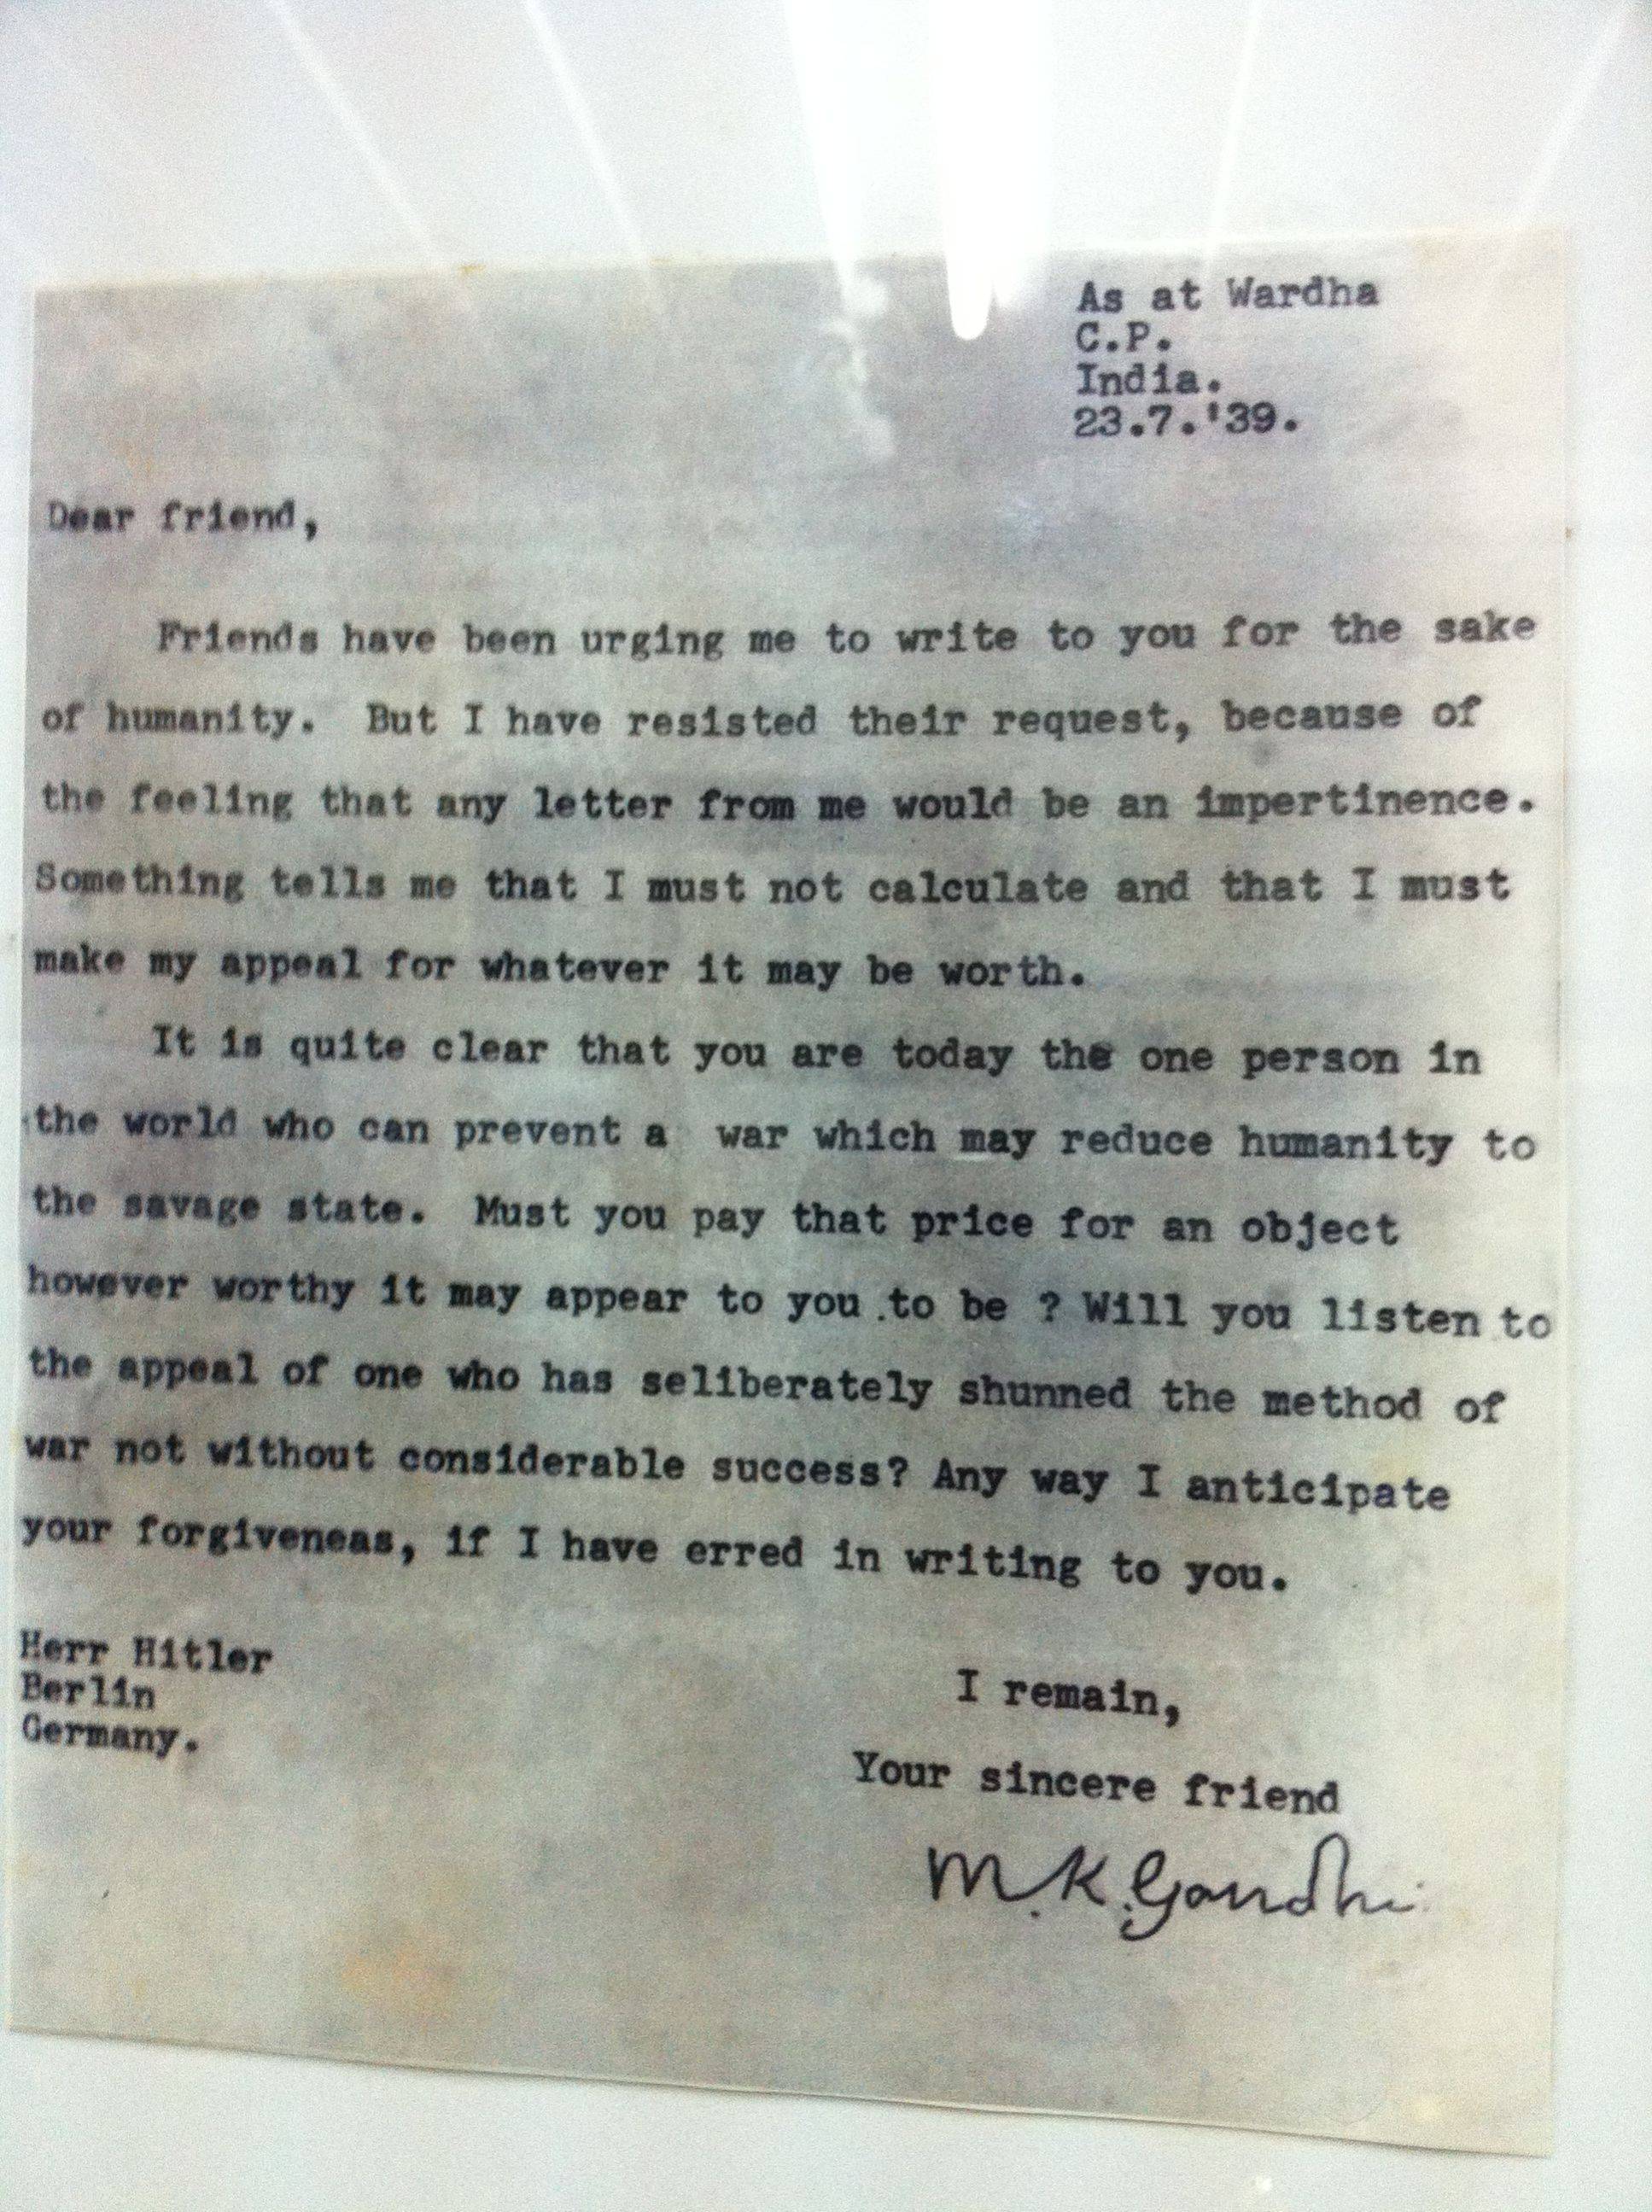 Ghandi Letter To Hitler never arrived